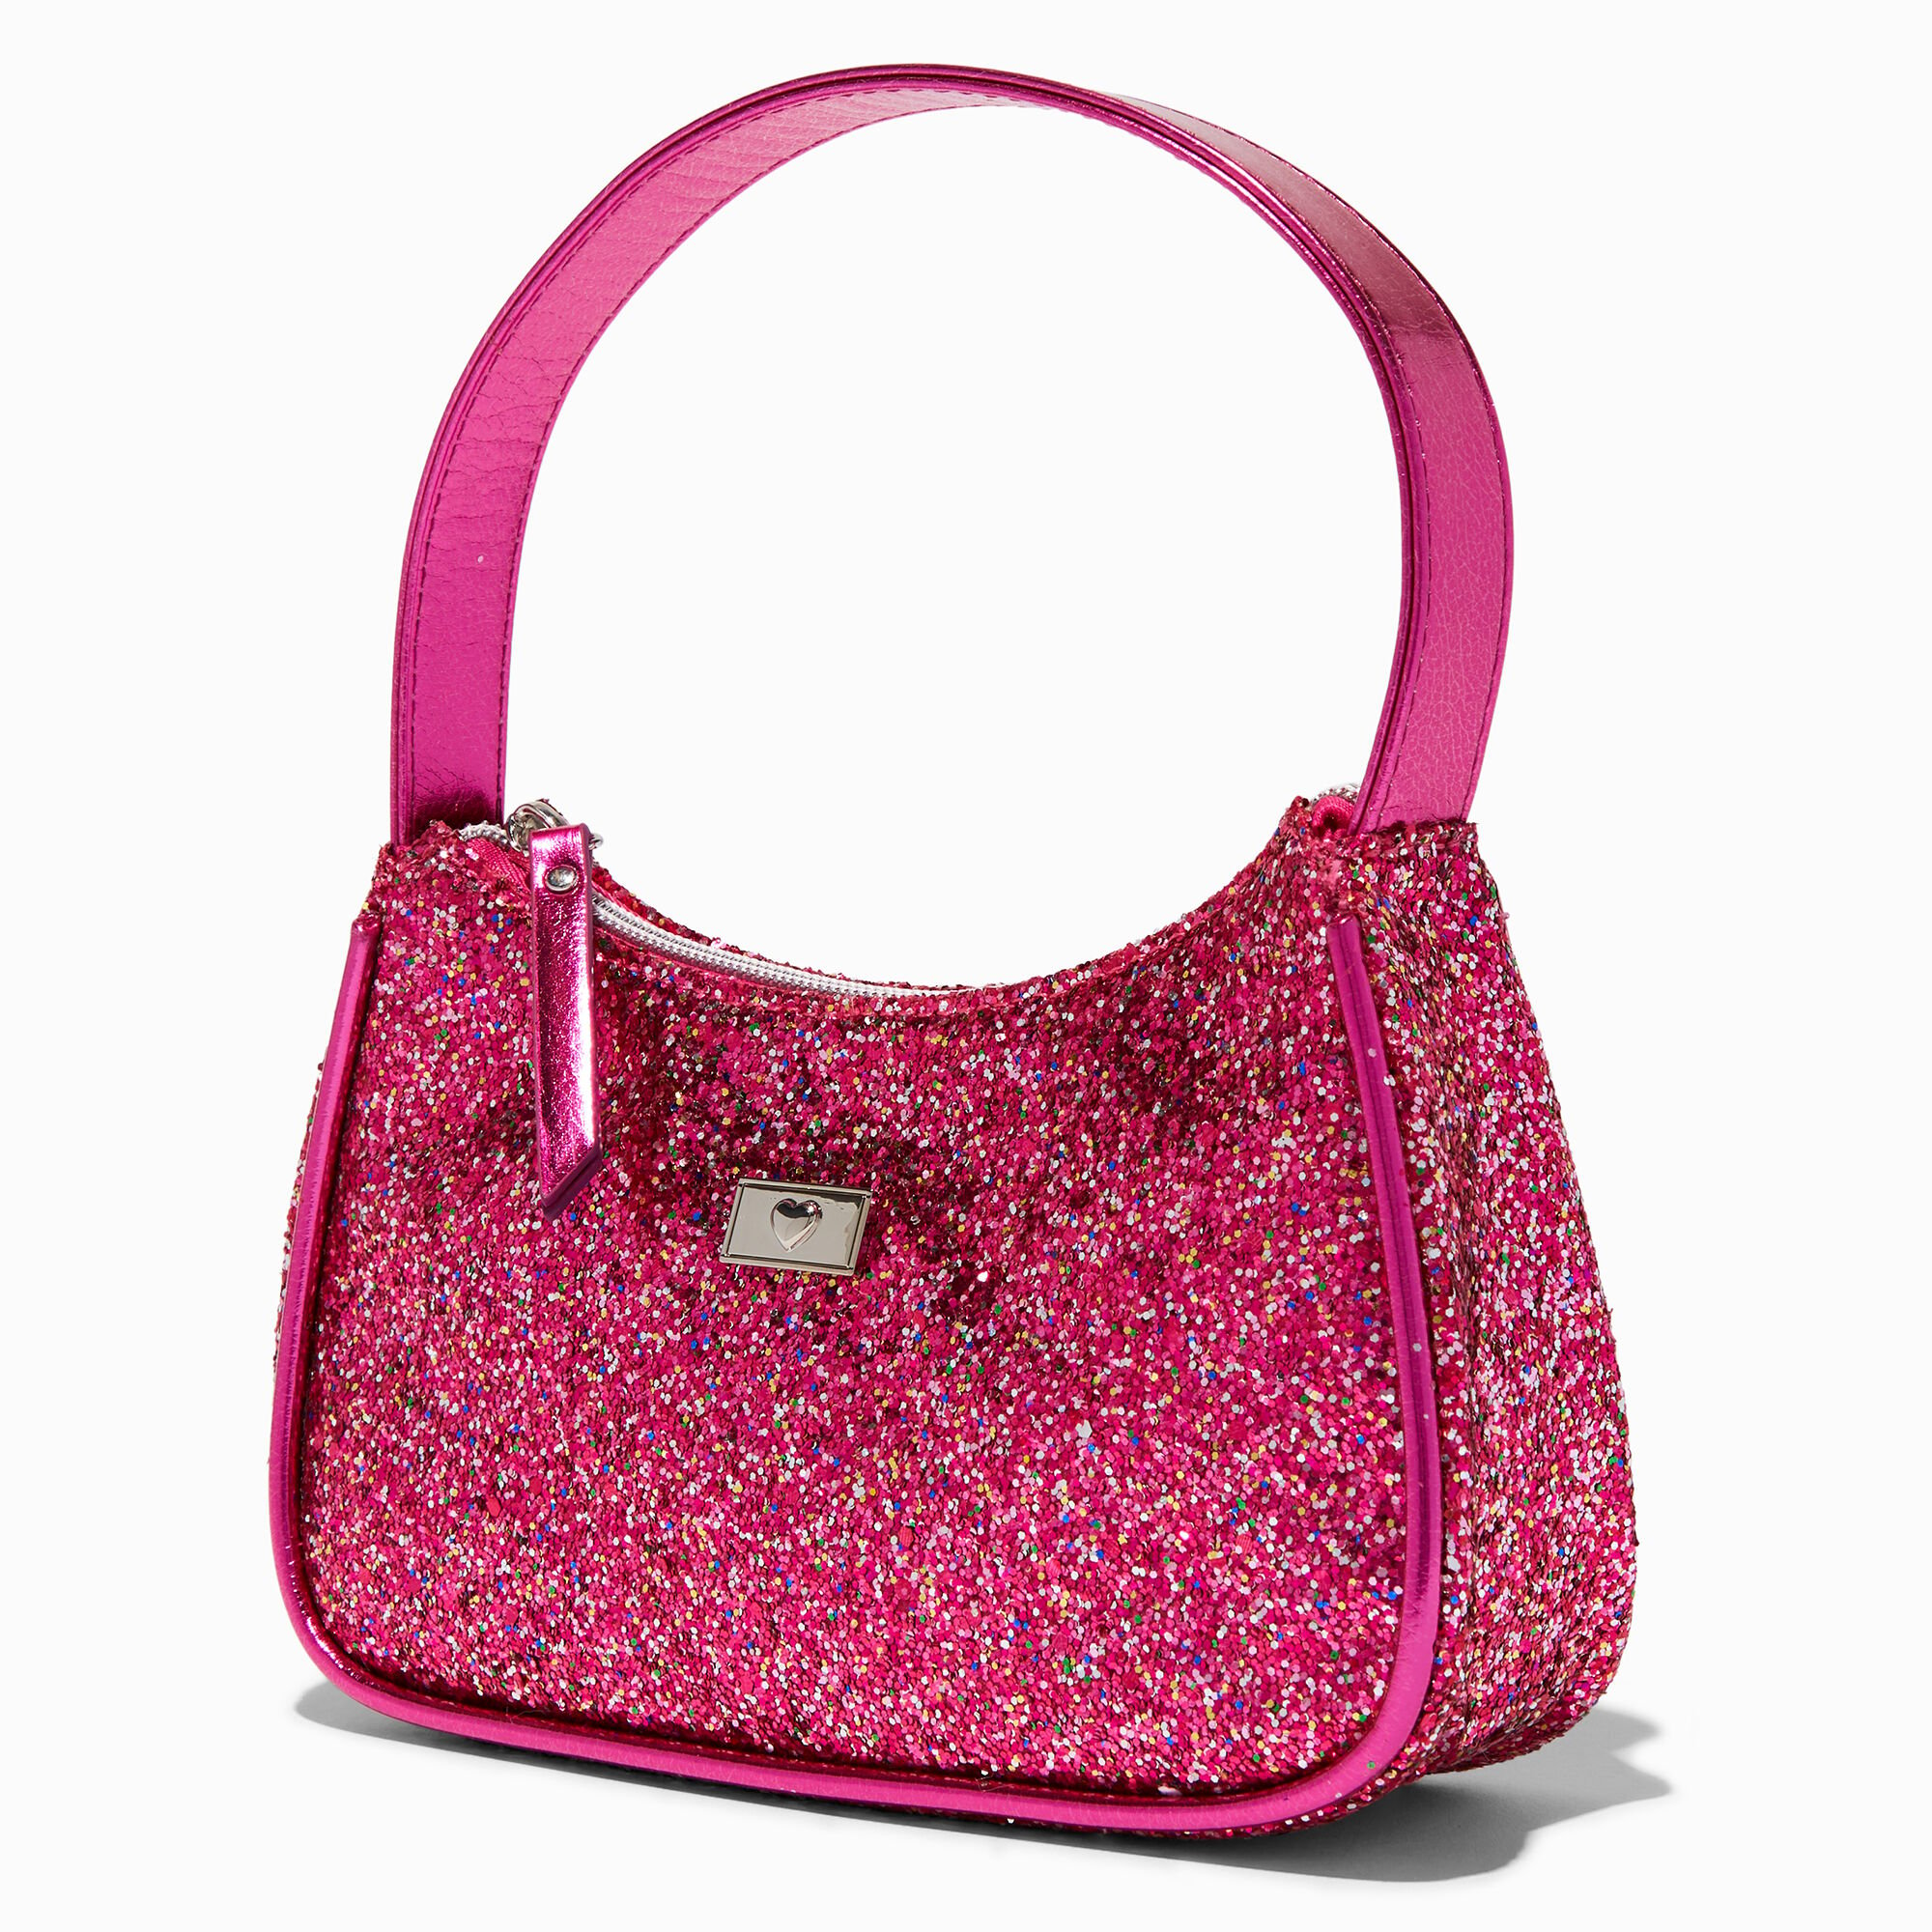 View Claires Glitter Shoulder Bag Pink information